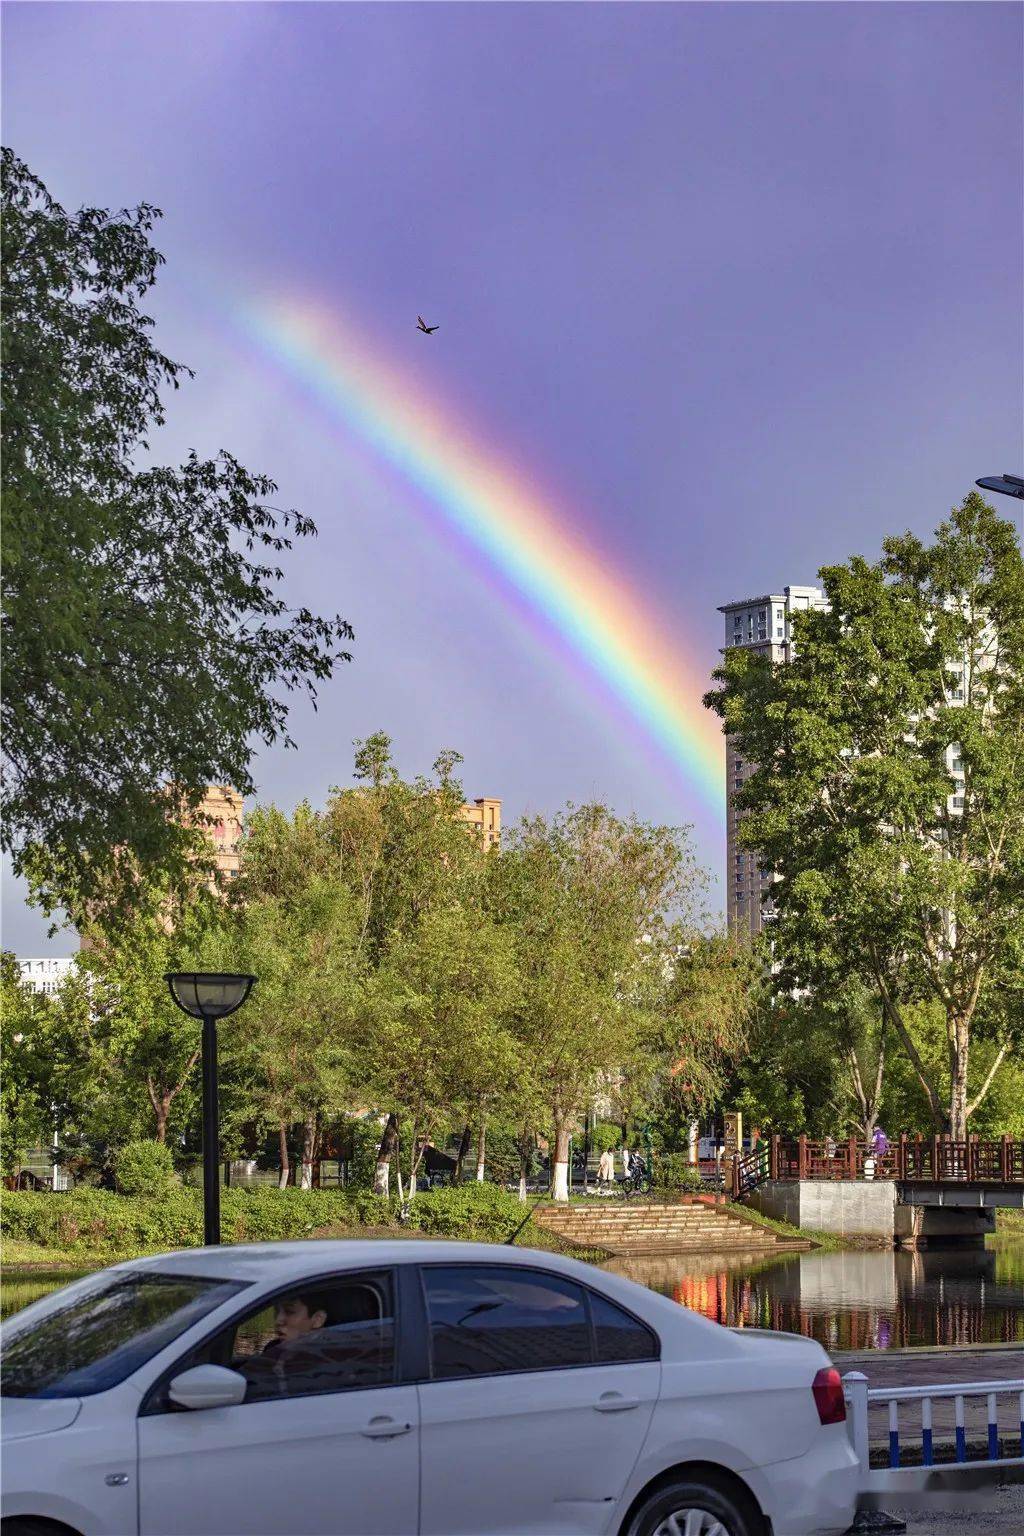 海拉尔市区雨后双彩虹!高清美图上映